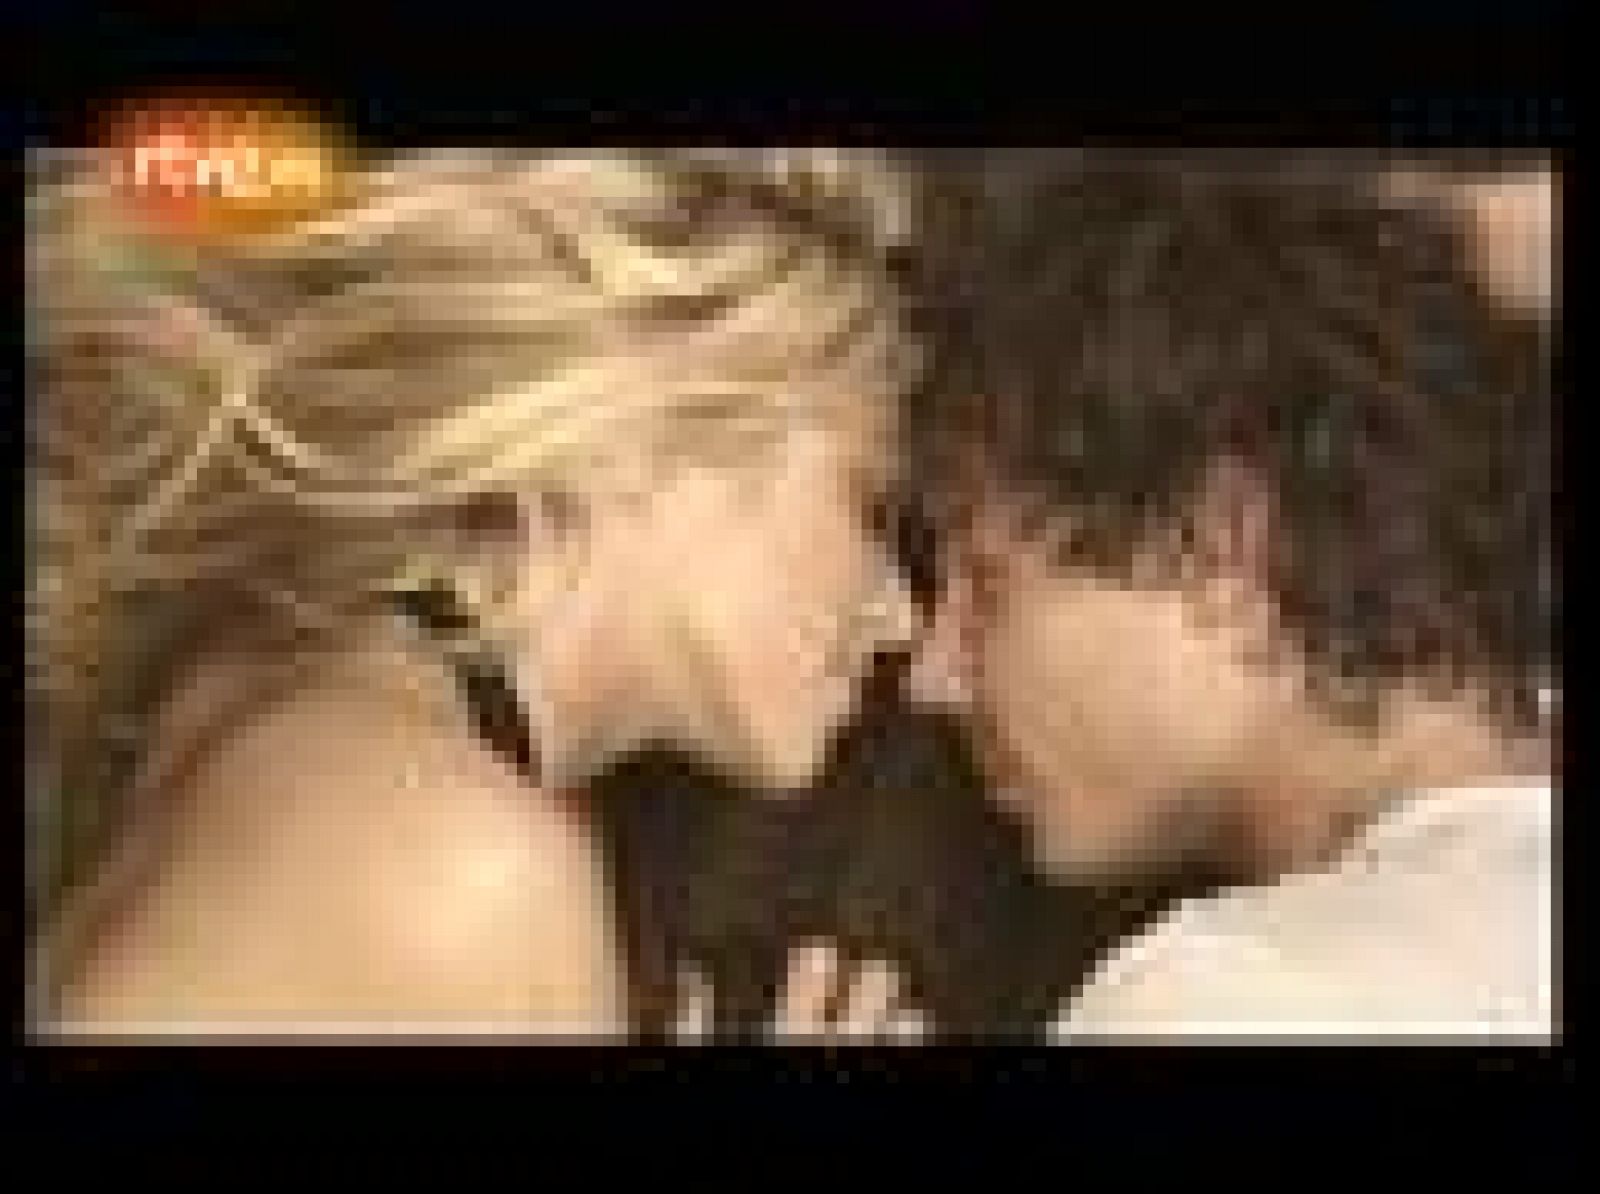 Medio minuto del videoclip grabado por Jaume de Laiguana para el tercer sencillo de 'Loba', en el que Shakira y Rafa Nadal aparecen abrazados y se prodigan caricias. 